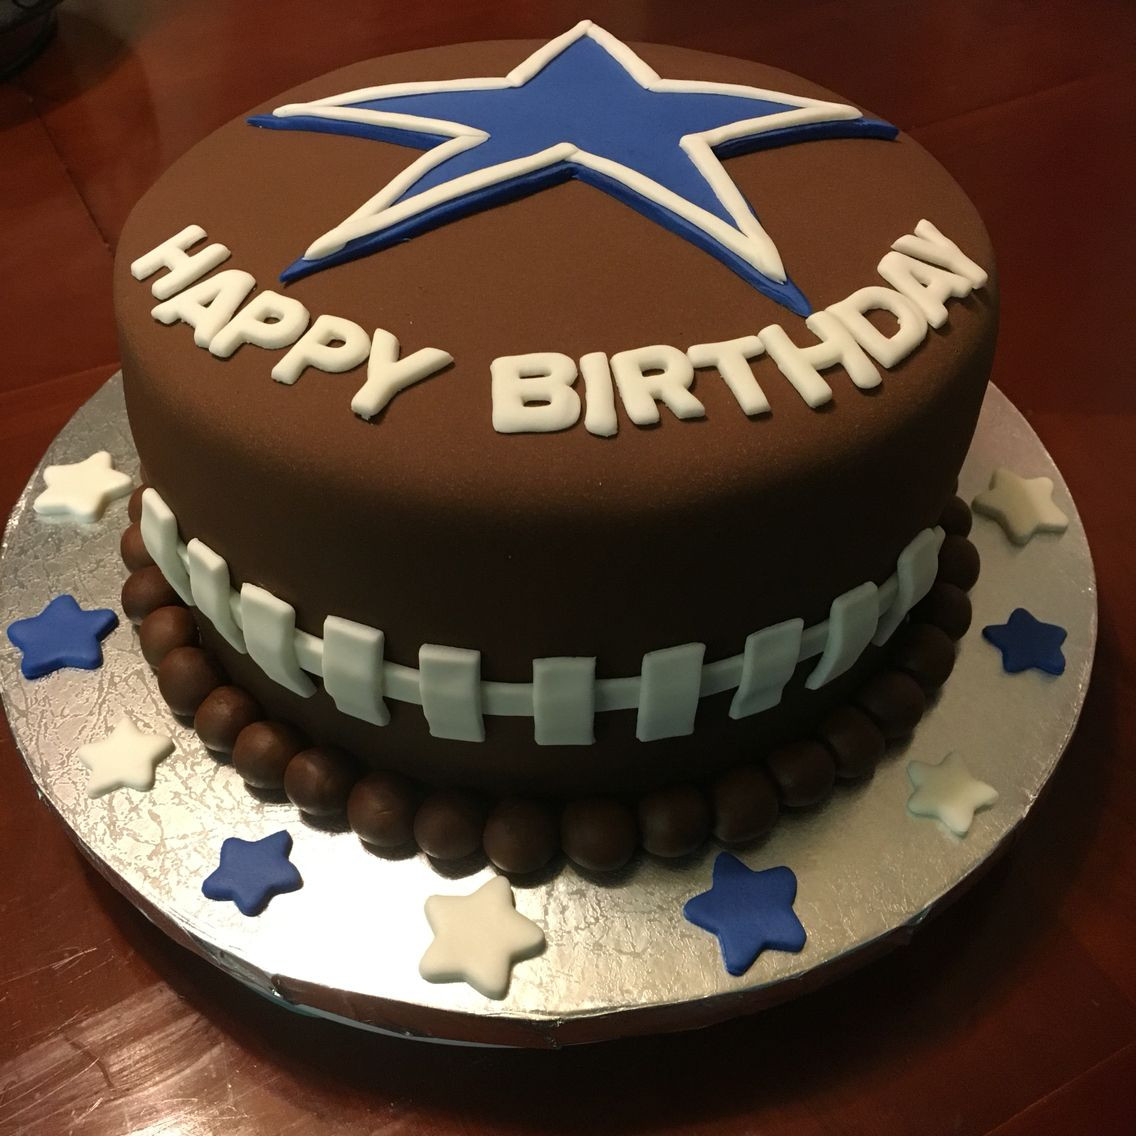 Dallas Cowboys Birthday Cakes
 Dallas Cowboys Cake in 2019